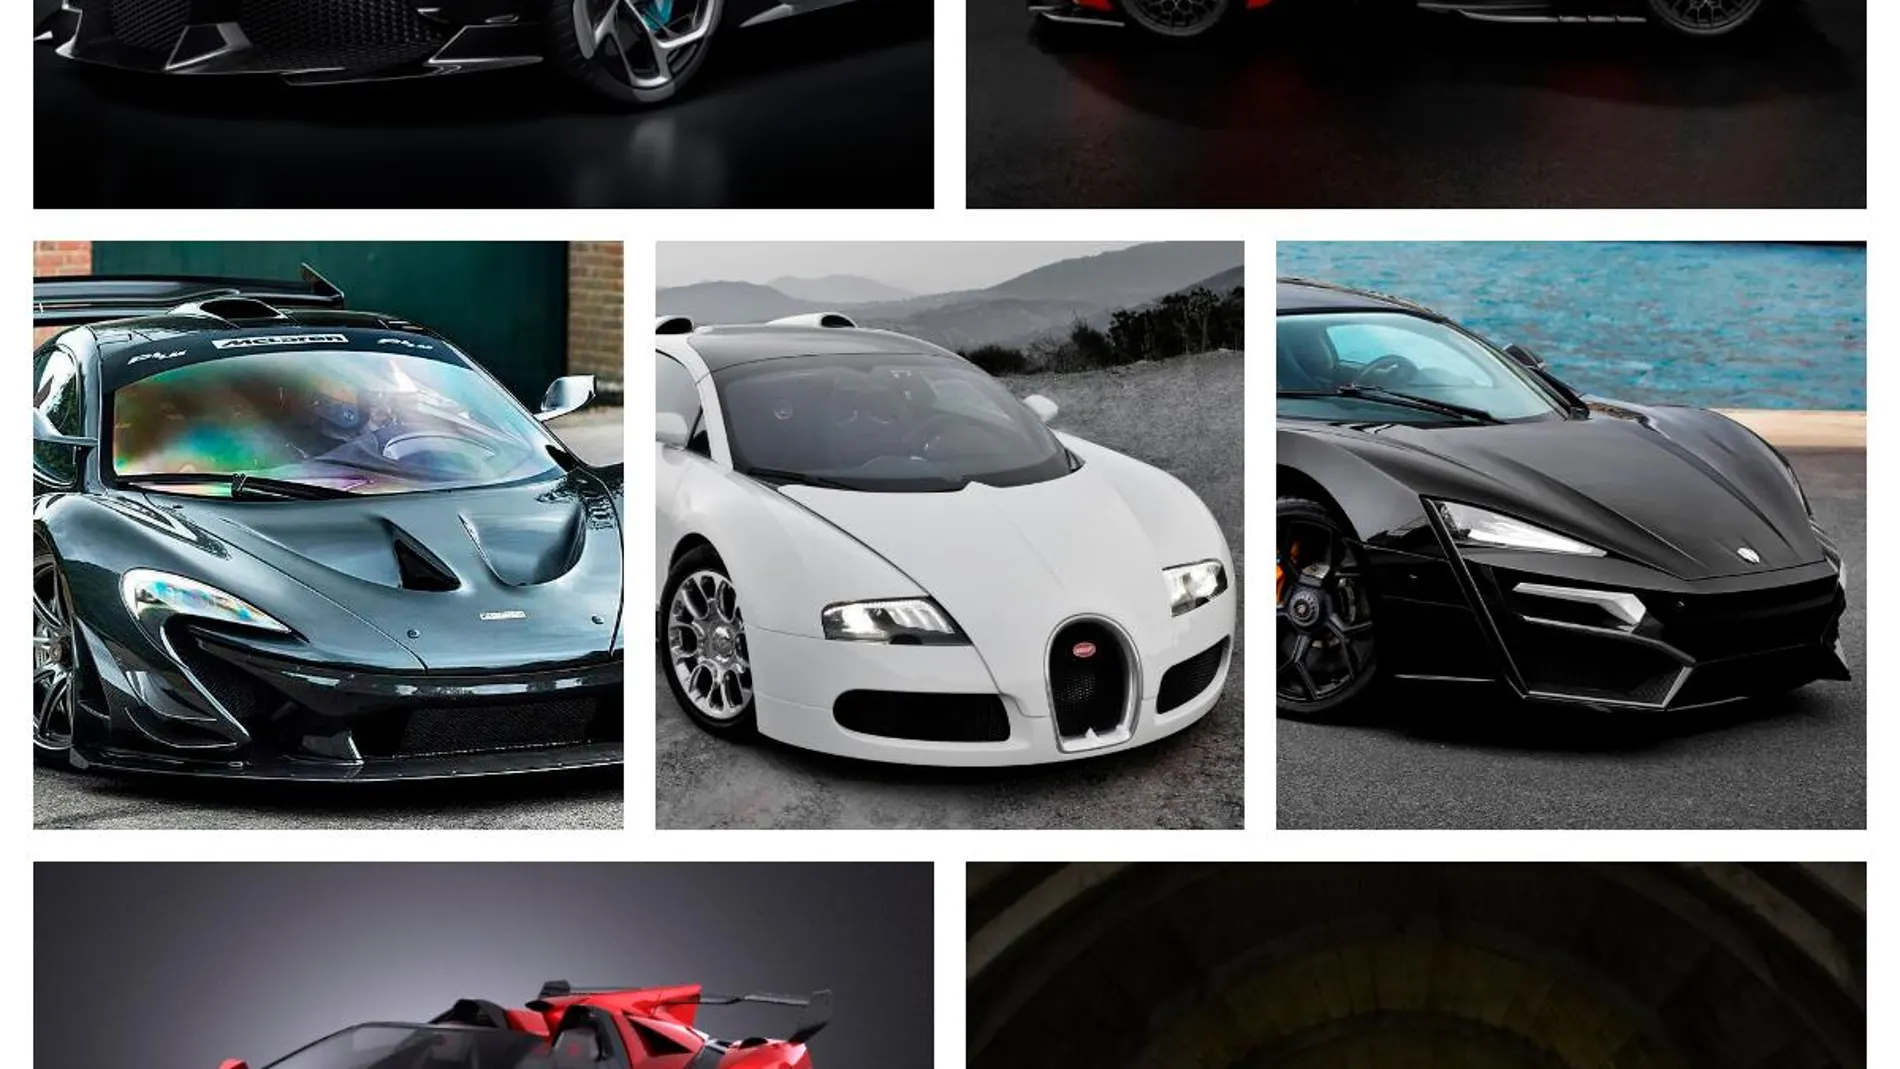 Collage de 7 de los vehículos más exclusivos del mercado